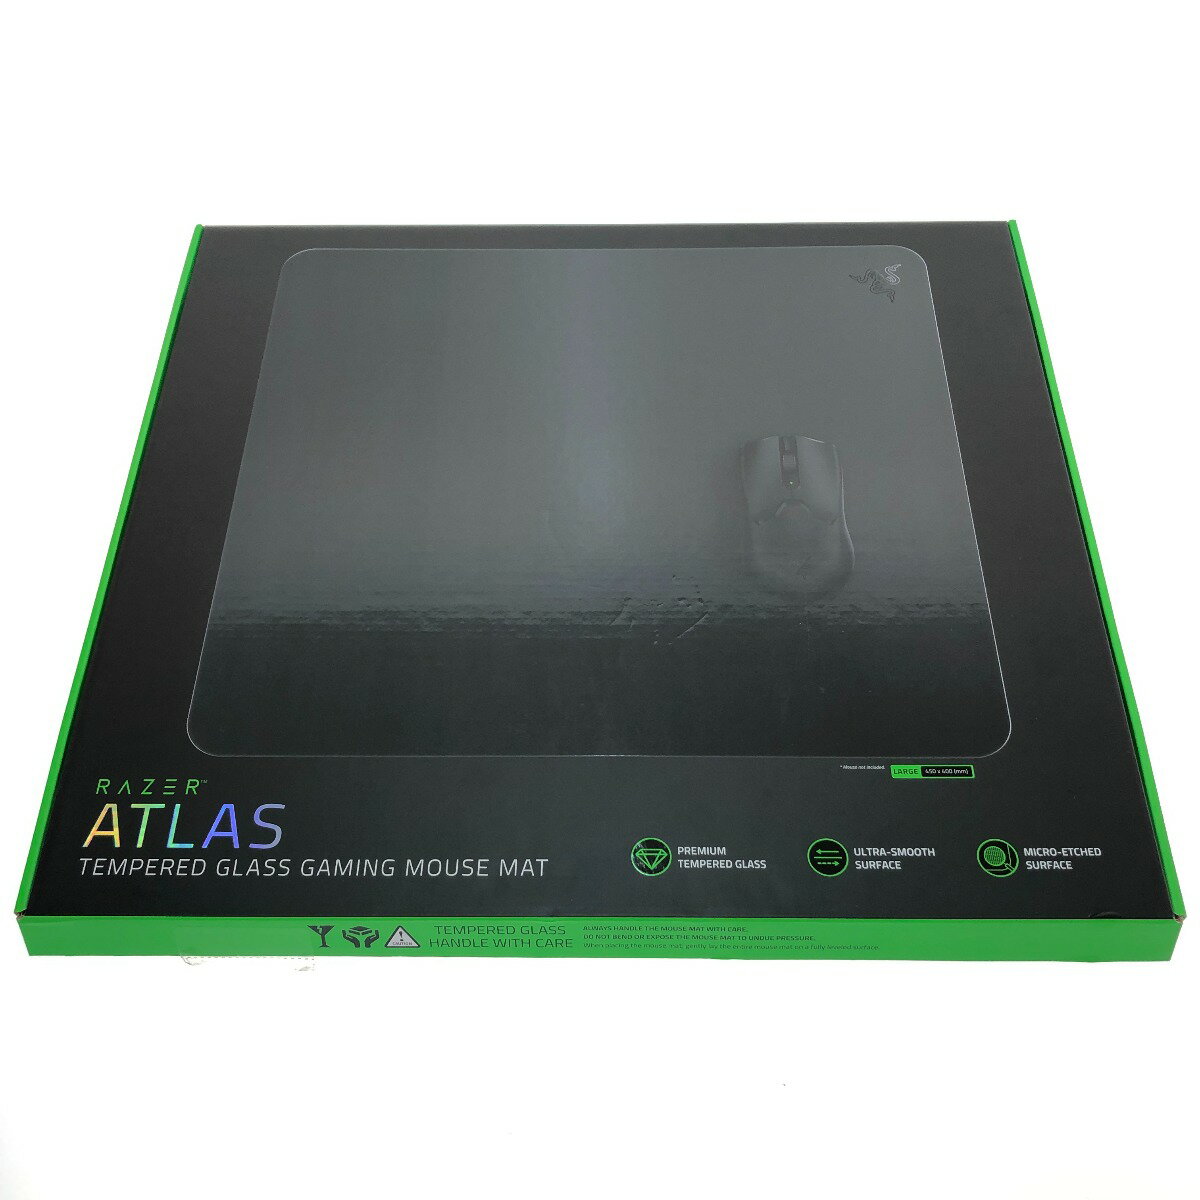 □□【中古】ATLAS アトラス 強化ガラス ゲーミングマウスパッド RZ02-04890100-R3M1 ブラック Bランク